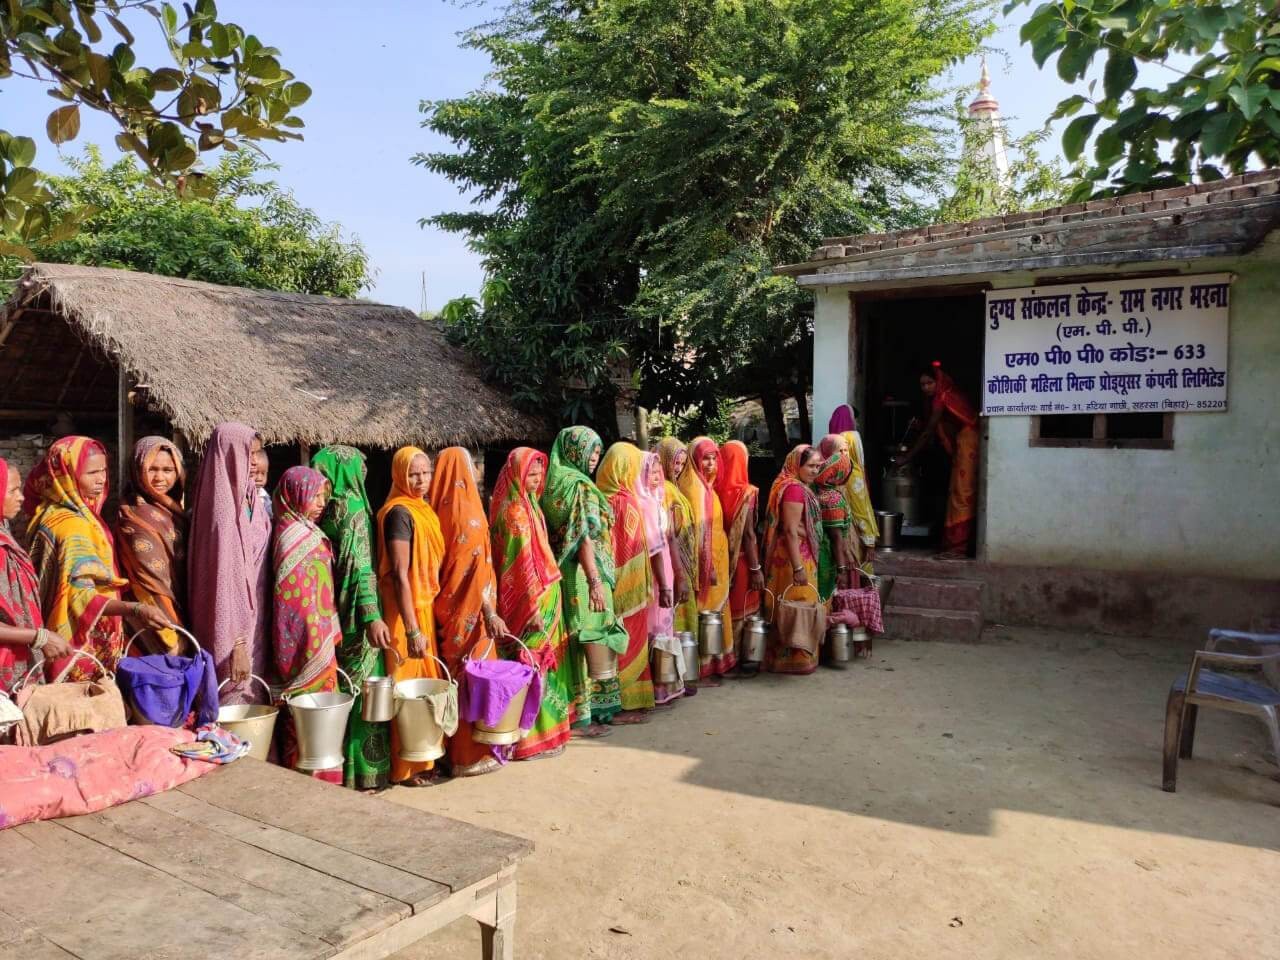 Ấn Độ: Những phụ nữ đổi đời nhờ dự án sữa